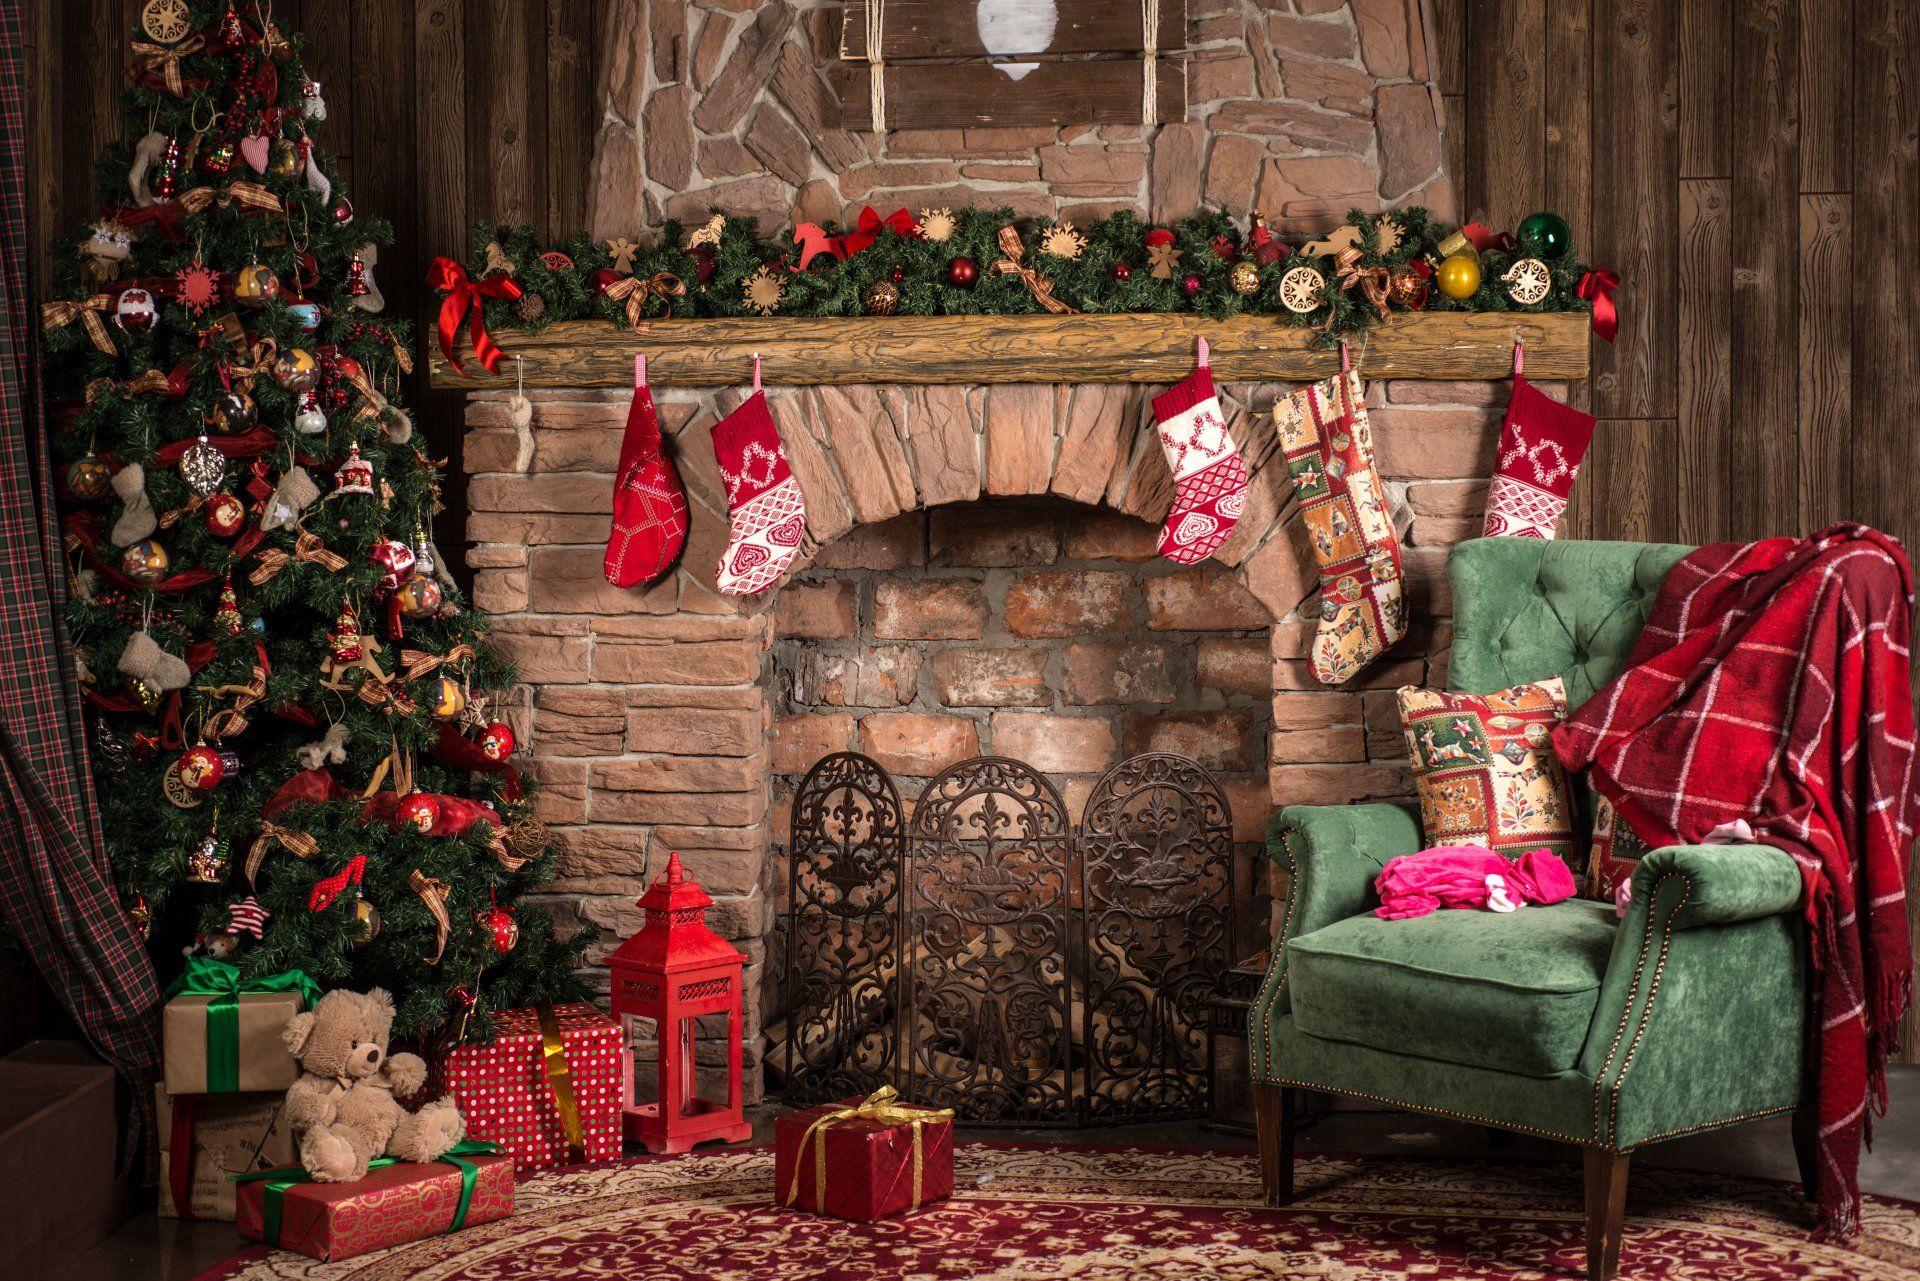 Holiday Christmas Holiday Christmas Tree Living Room Fireplace Christmas Ornaments Stocki. Christmas tree and fireplace, Christmas interiors, Christmas backdrops